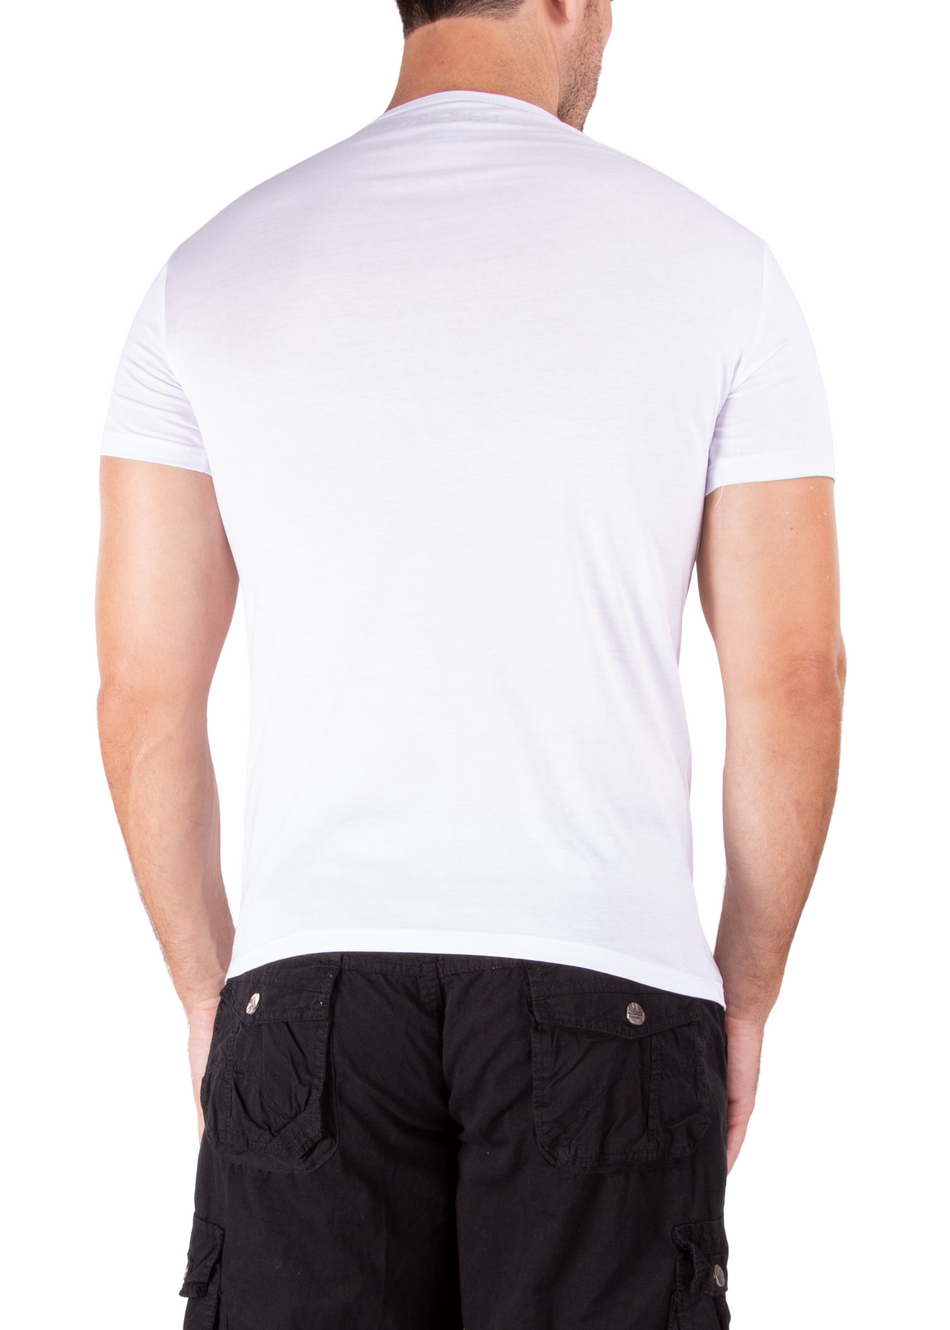 161845 - White T-Shirt